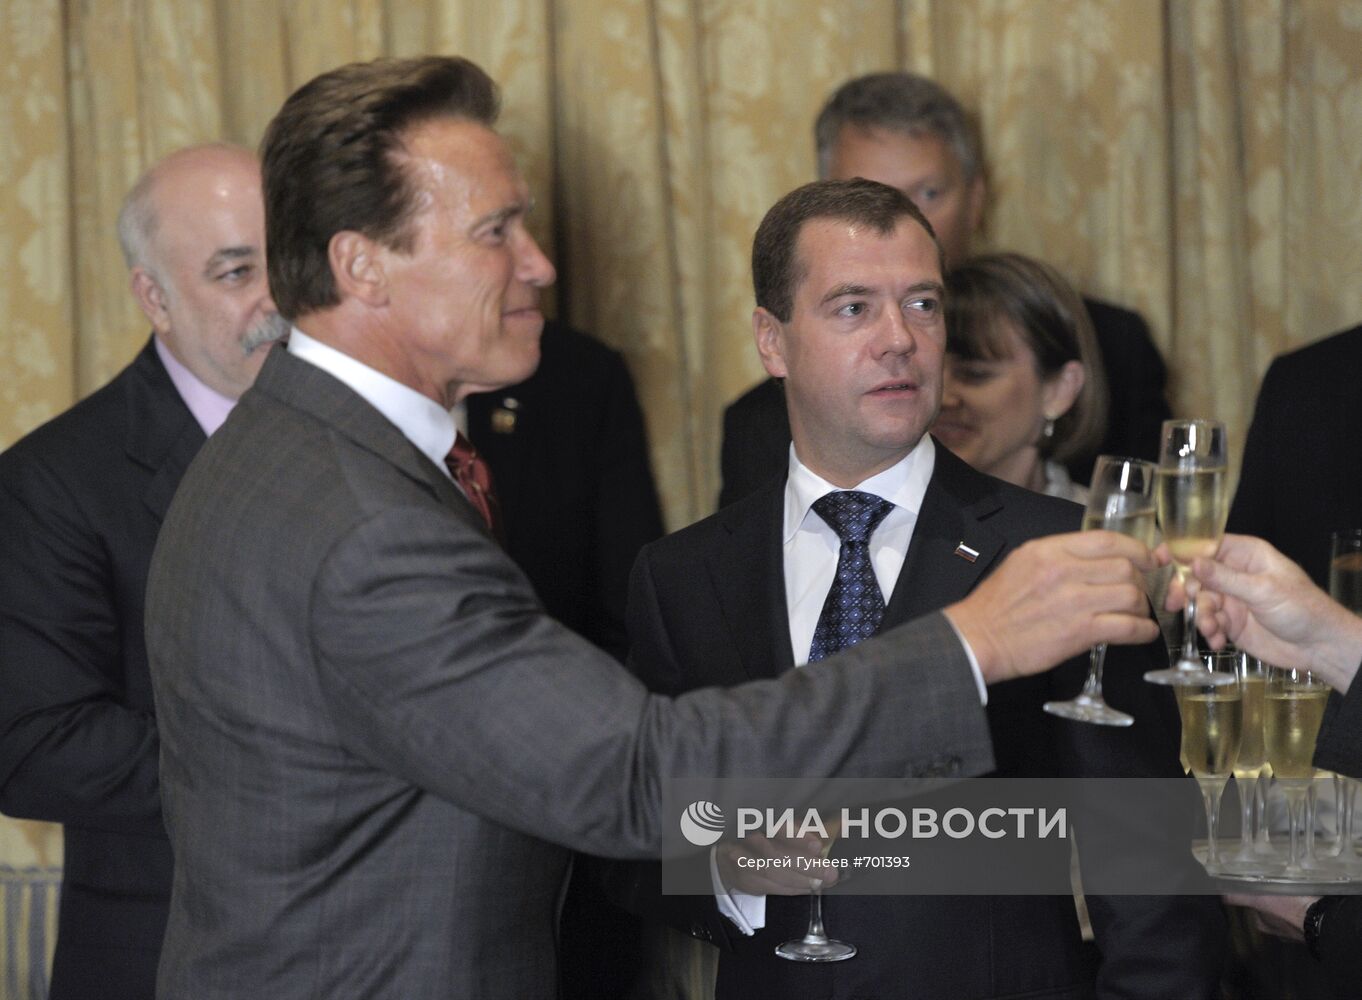 Рабочий визит Дмитрия Медведева в США